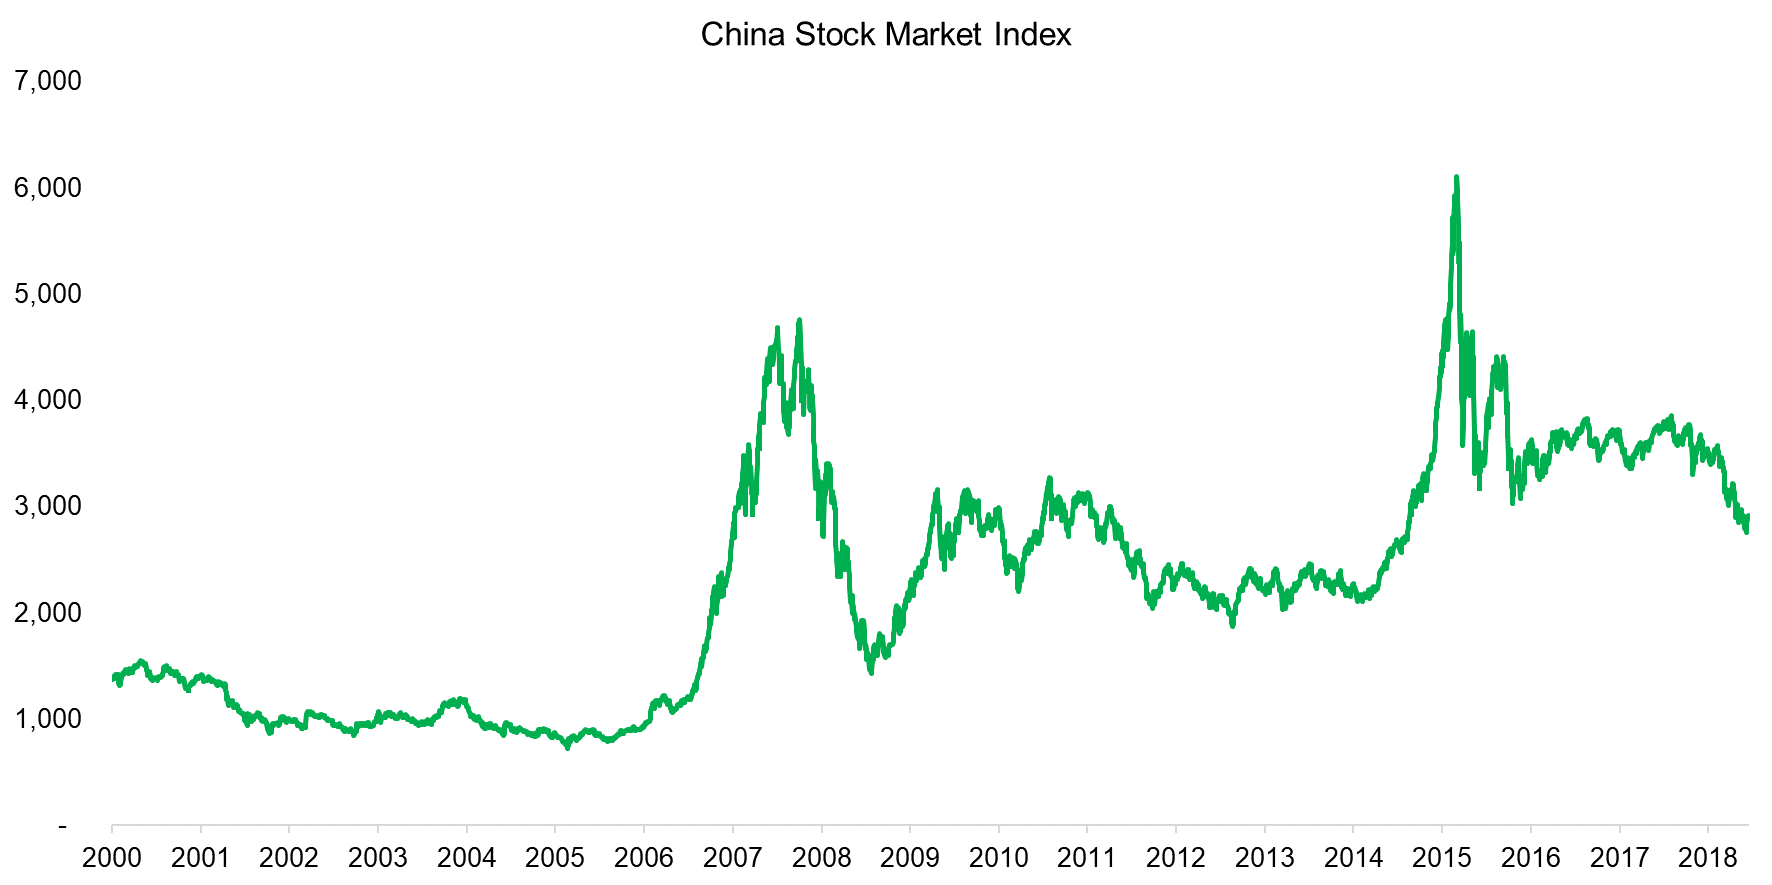 China Stock Market Index